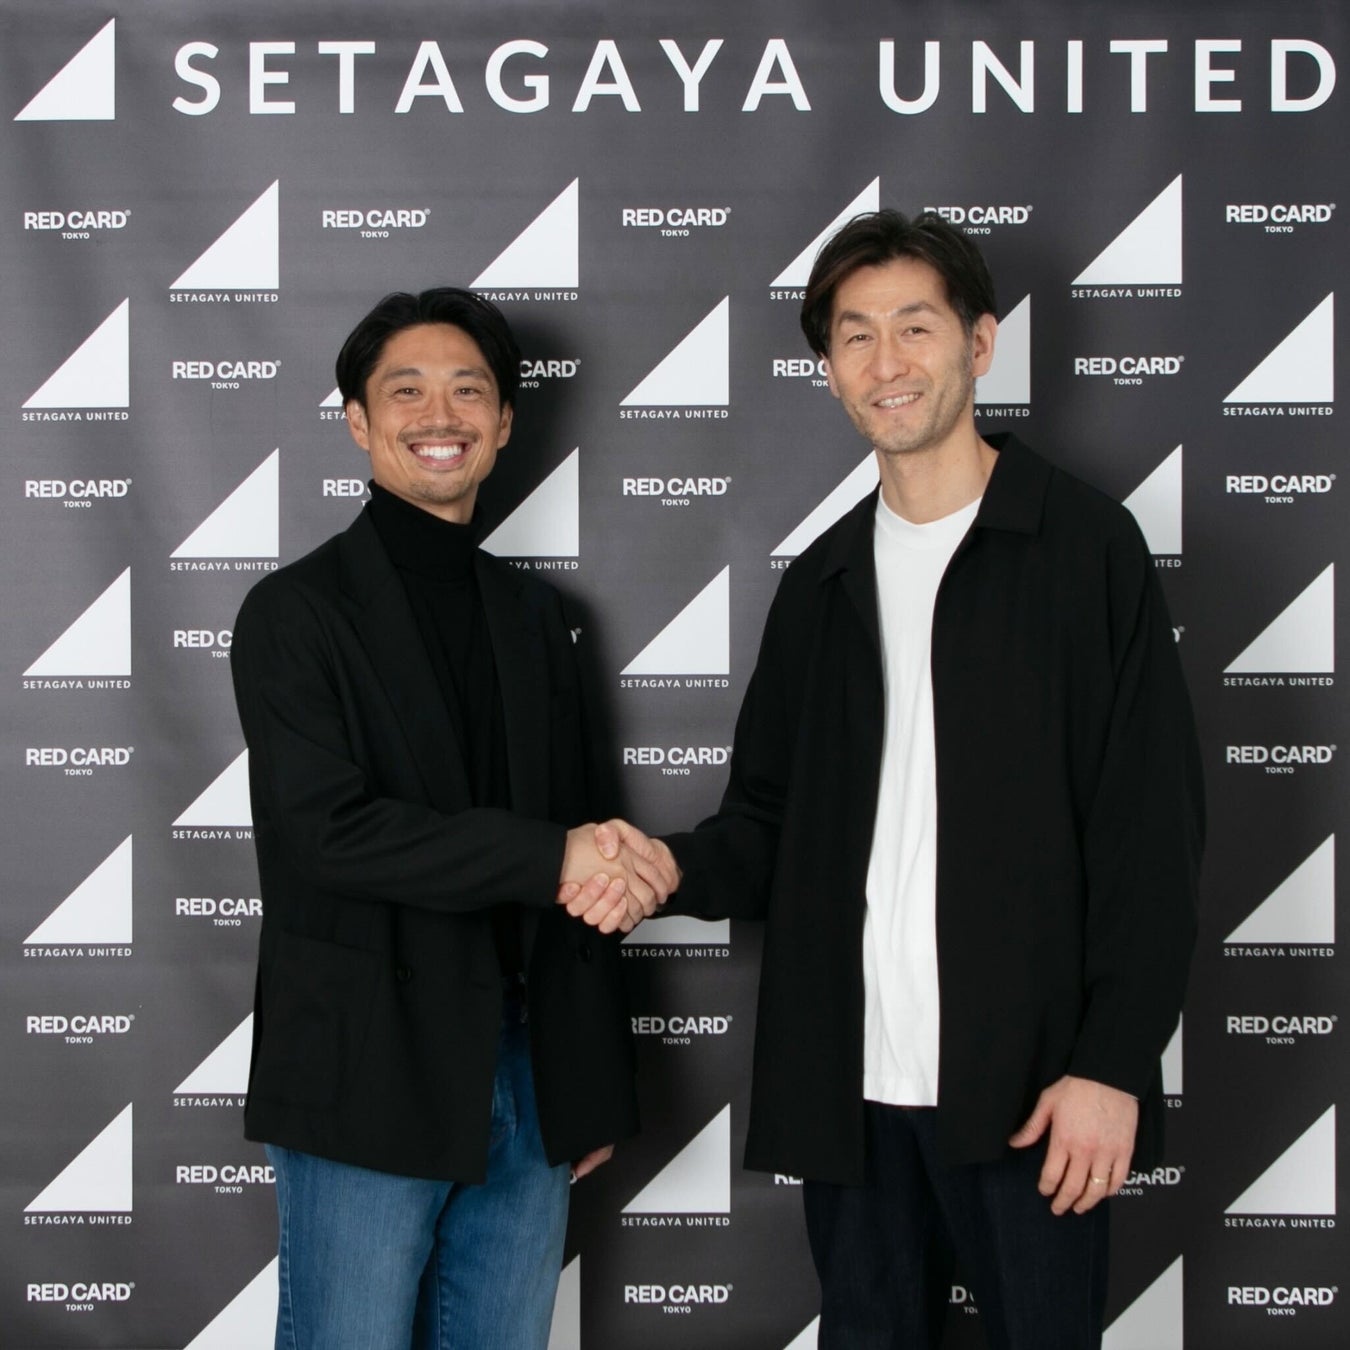 SETAGAYA UNITEDがデニムを中心としたアパレルブランド「RED CARD TOKYO（レッドカードトーキョー）」を展開する株式会社GUEST LISTとメインパートナーシップ契約を締結